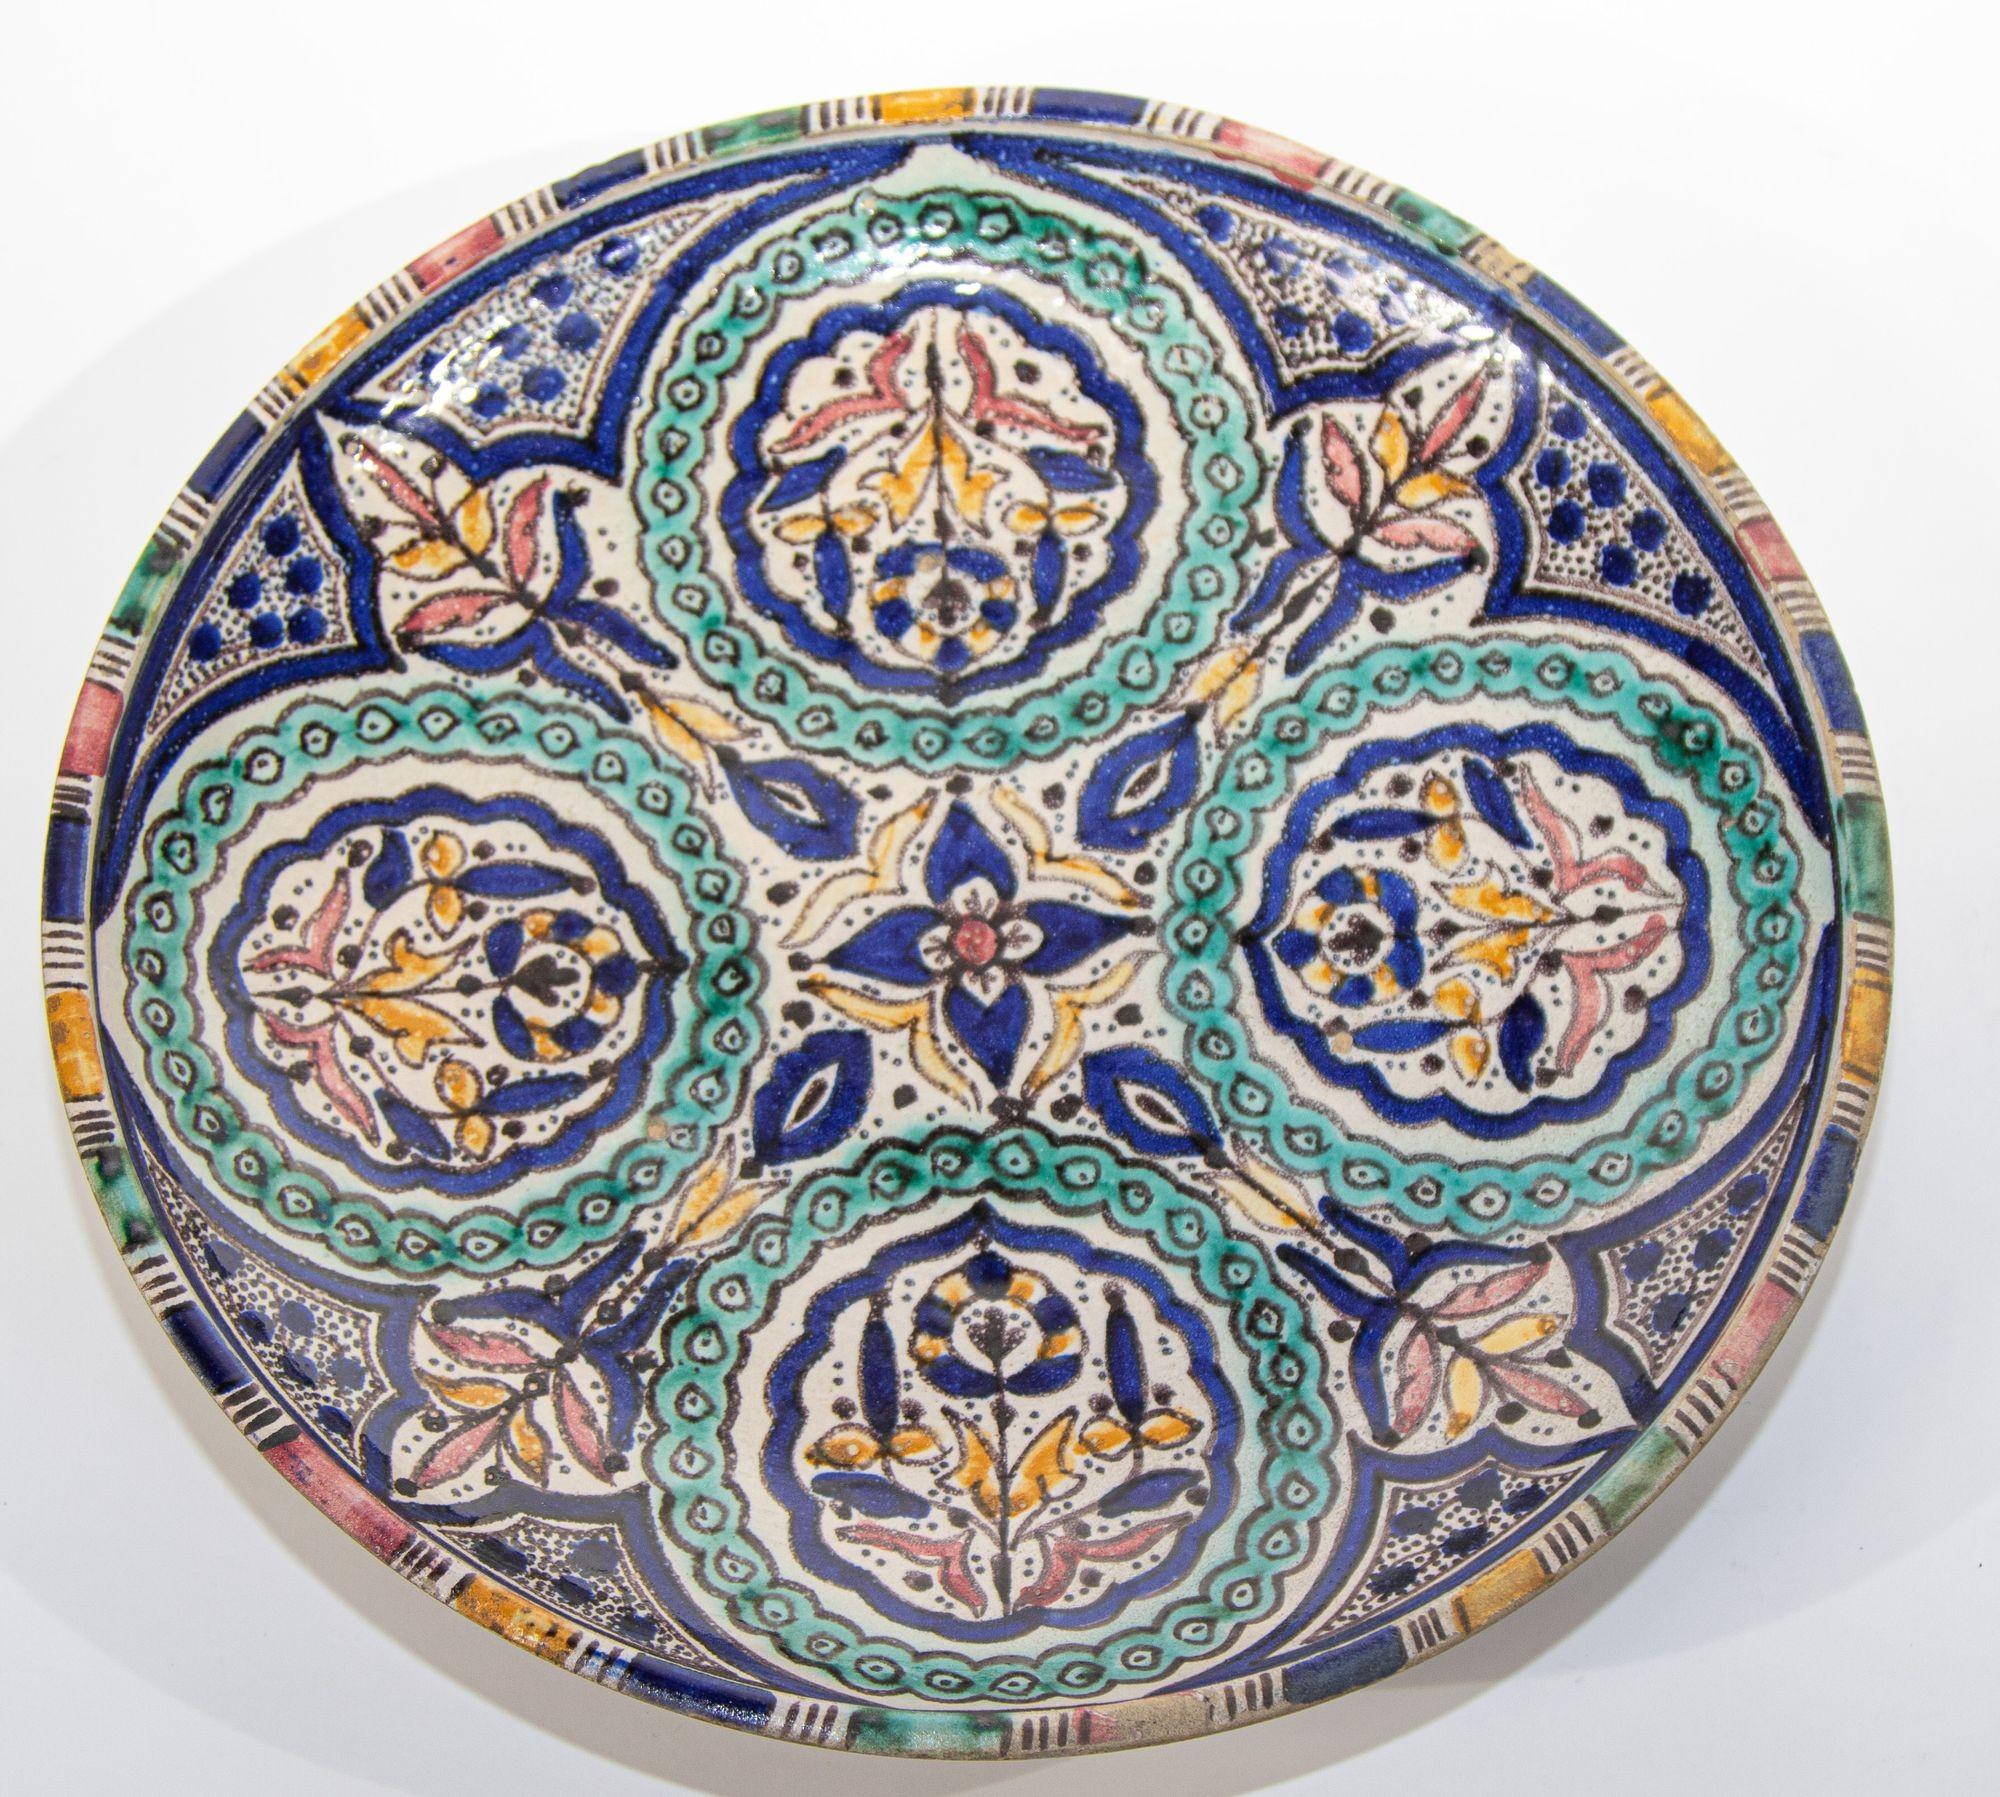 Antique bol en céramique marocaine peint à la main et fabriqué à la main ou assiette décorative d'art mural,
Grand bol en céramique marocaine fabriqué à la main à Fès par des artisans. Assiette en céramique mauresque peinte à la main, provenant de